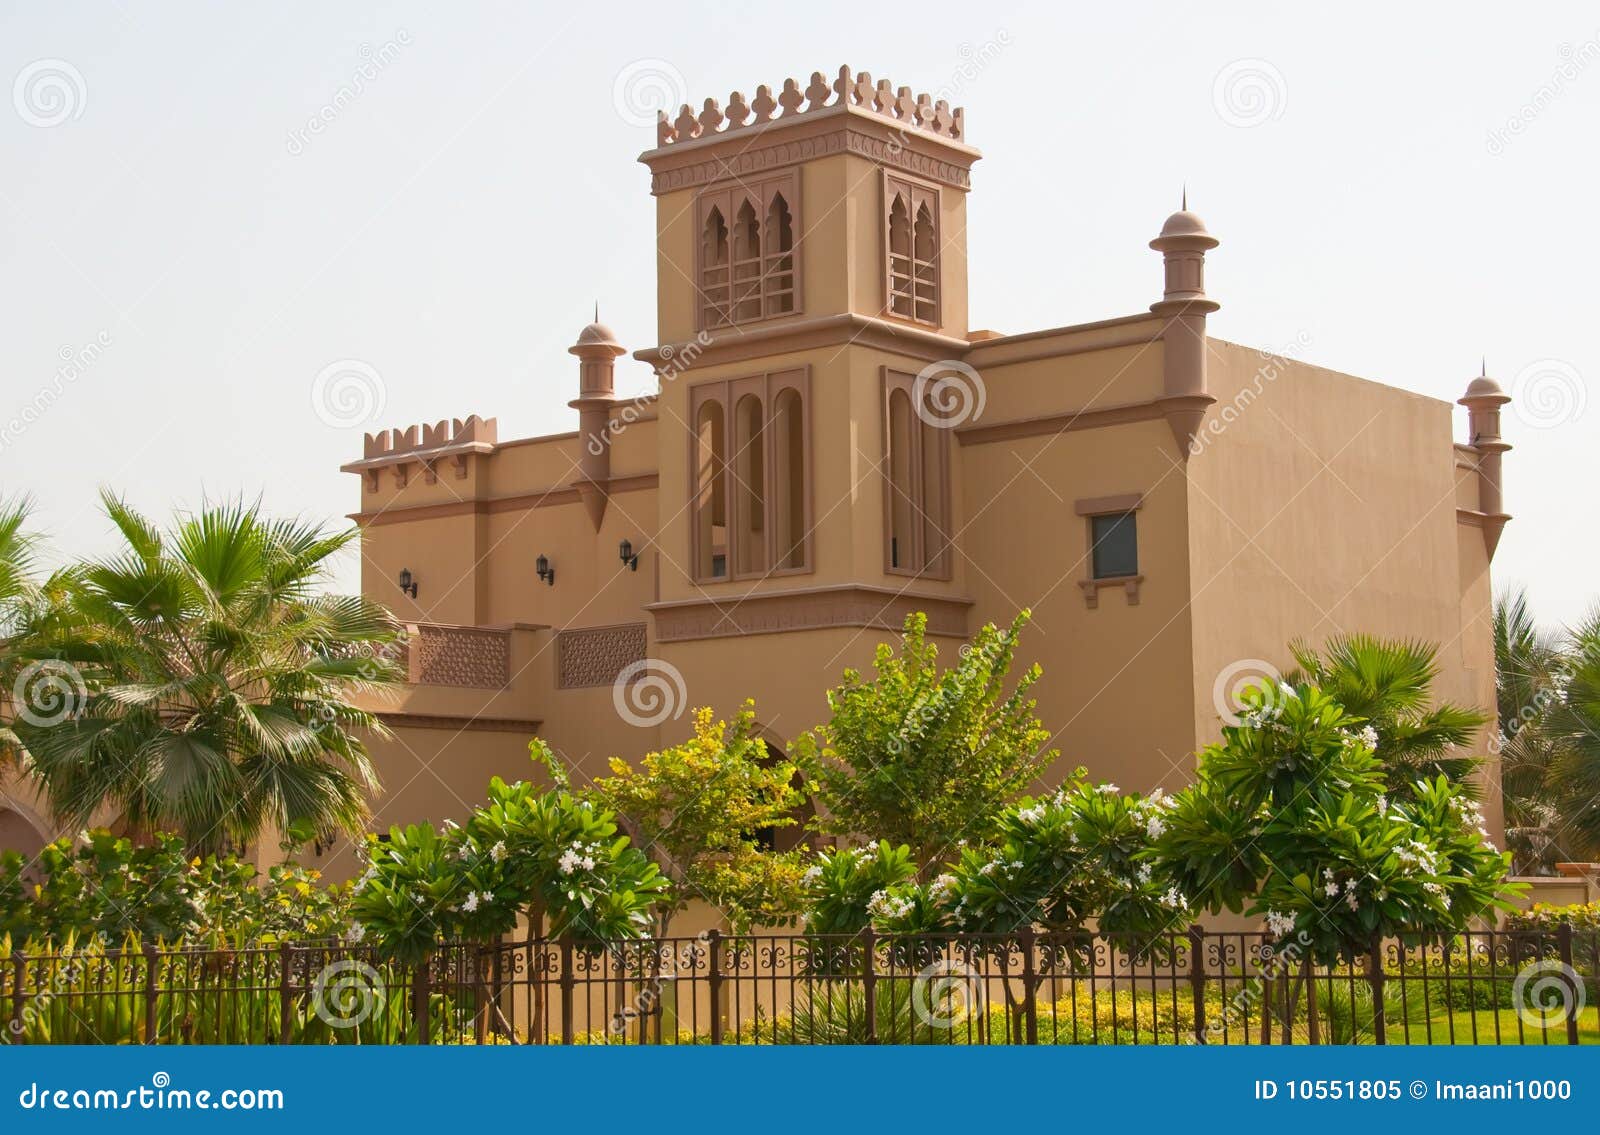 【携程攻略】迪拜迪拜民俗村景点,迪拜的民俗村紧邻迪拜博物馆，它是了解迪拜古老民俗的好去处。 进入…